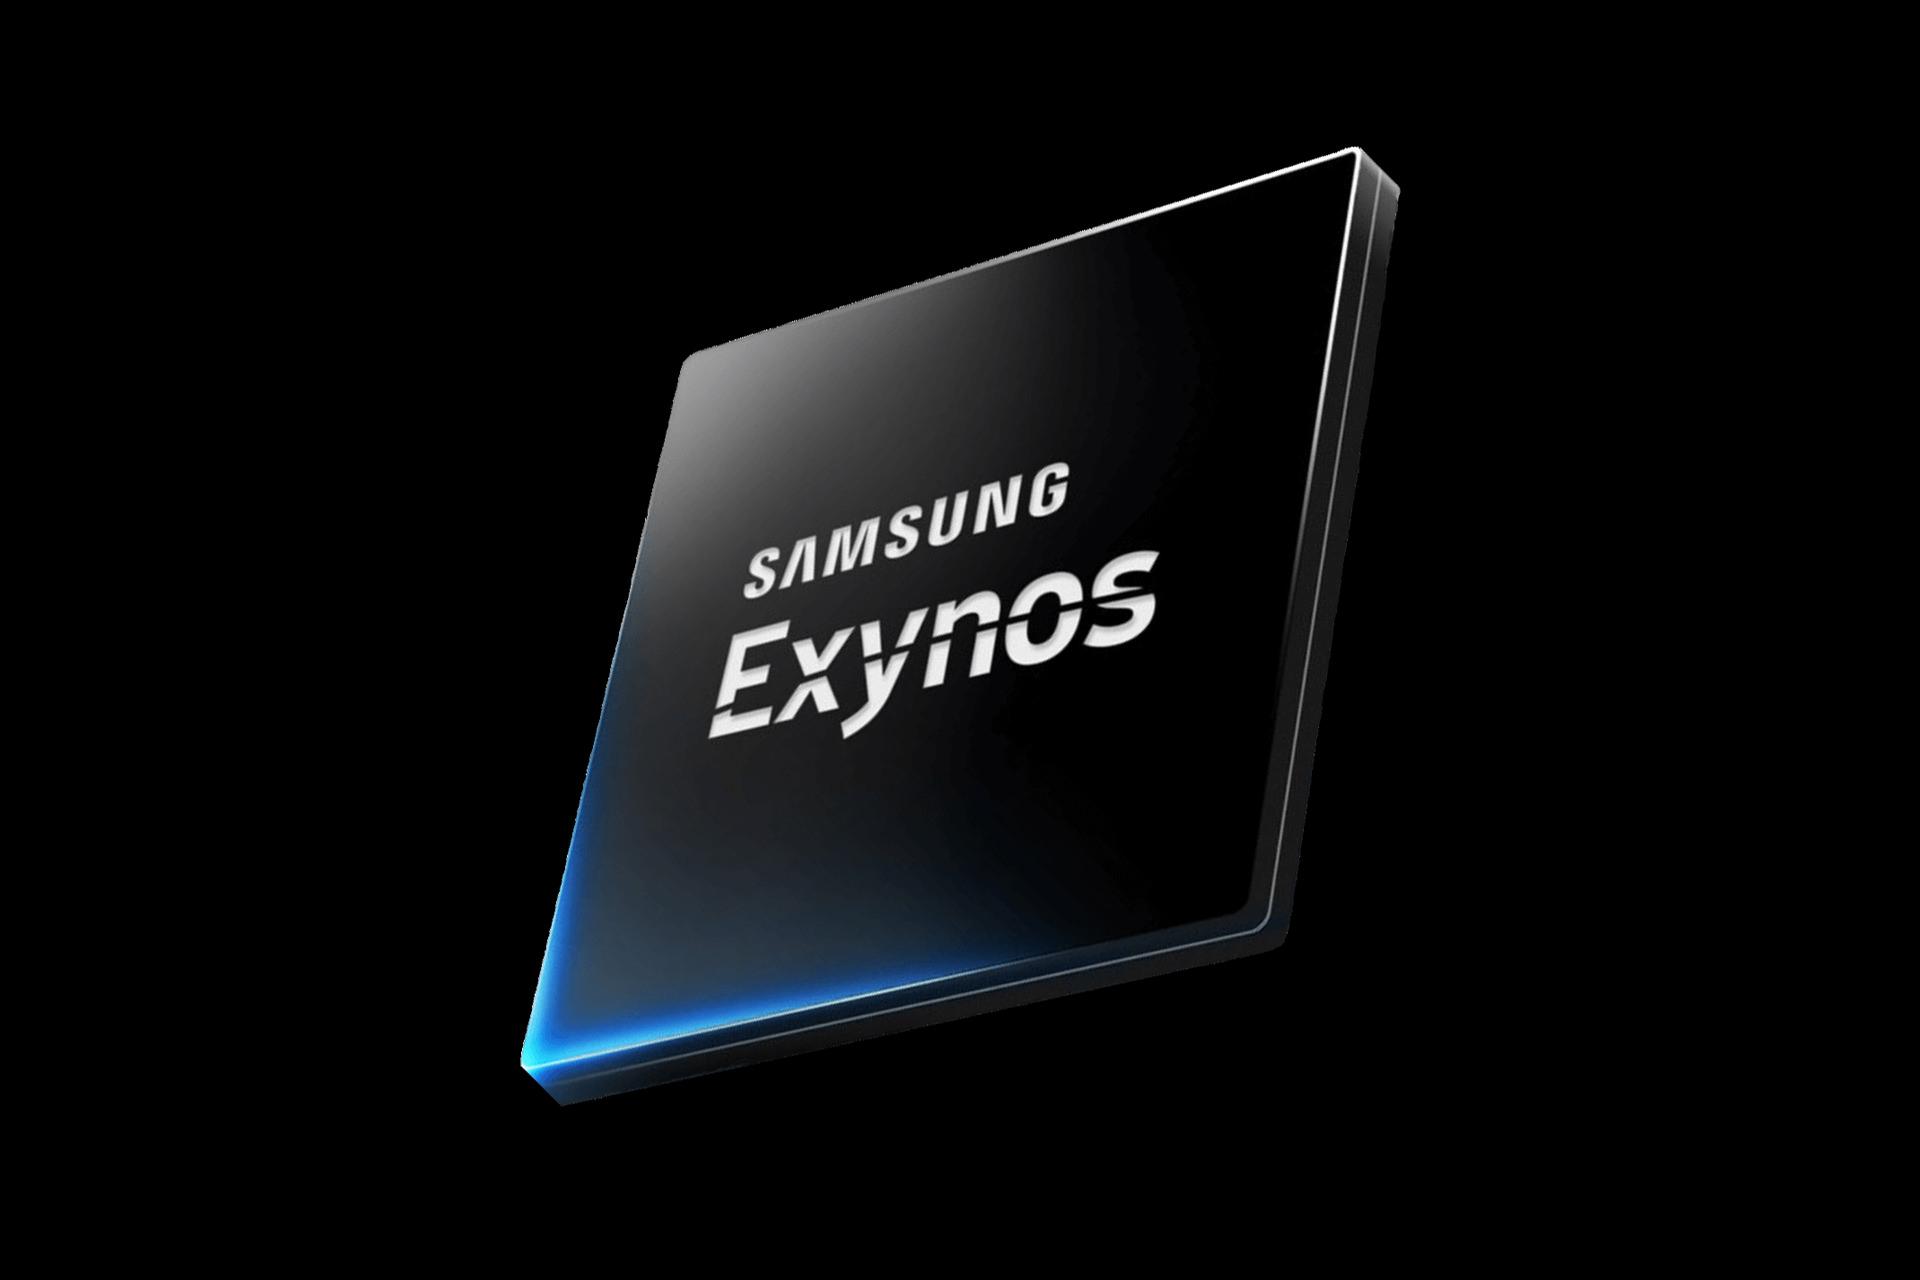 پردازنده اکسینوس سامسونگ / Samsung Exynos طرح گرافیکی پس زمینه مشکی